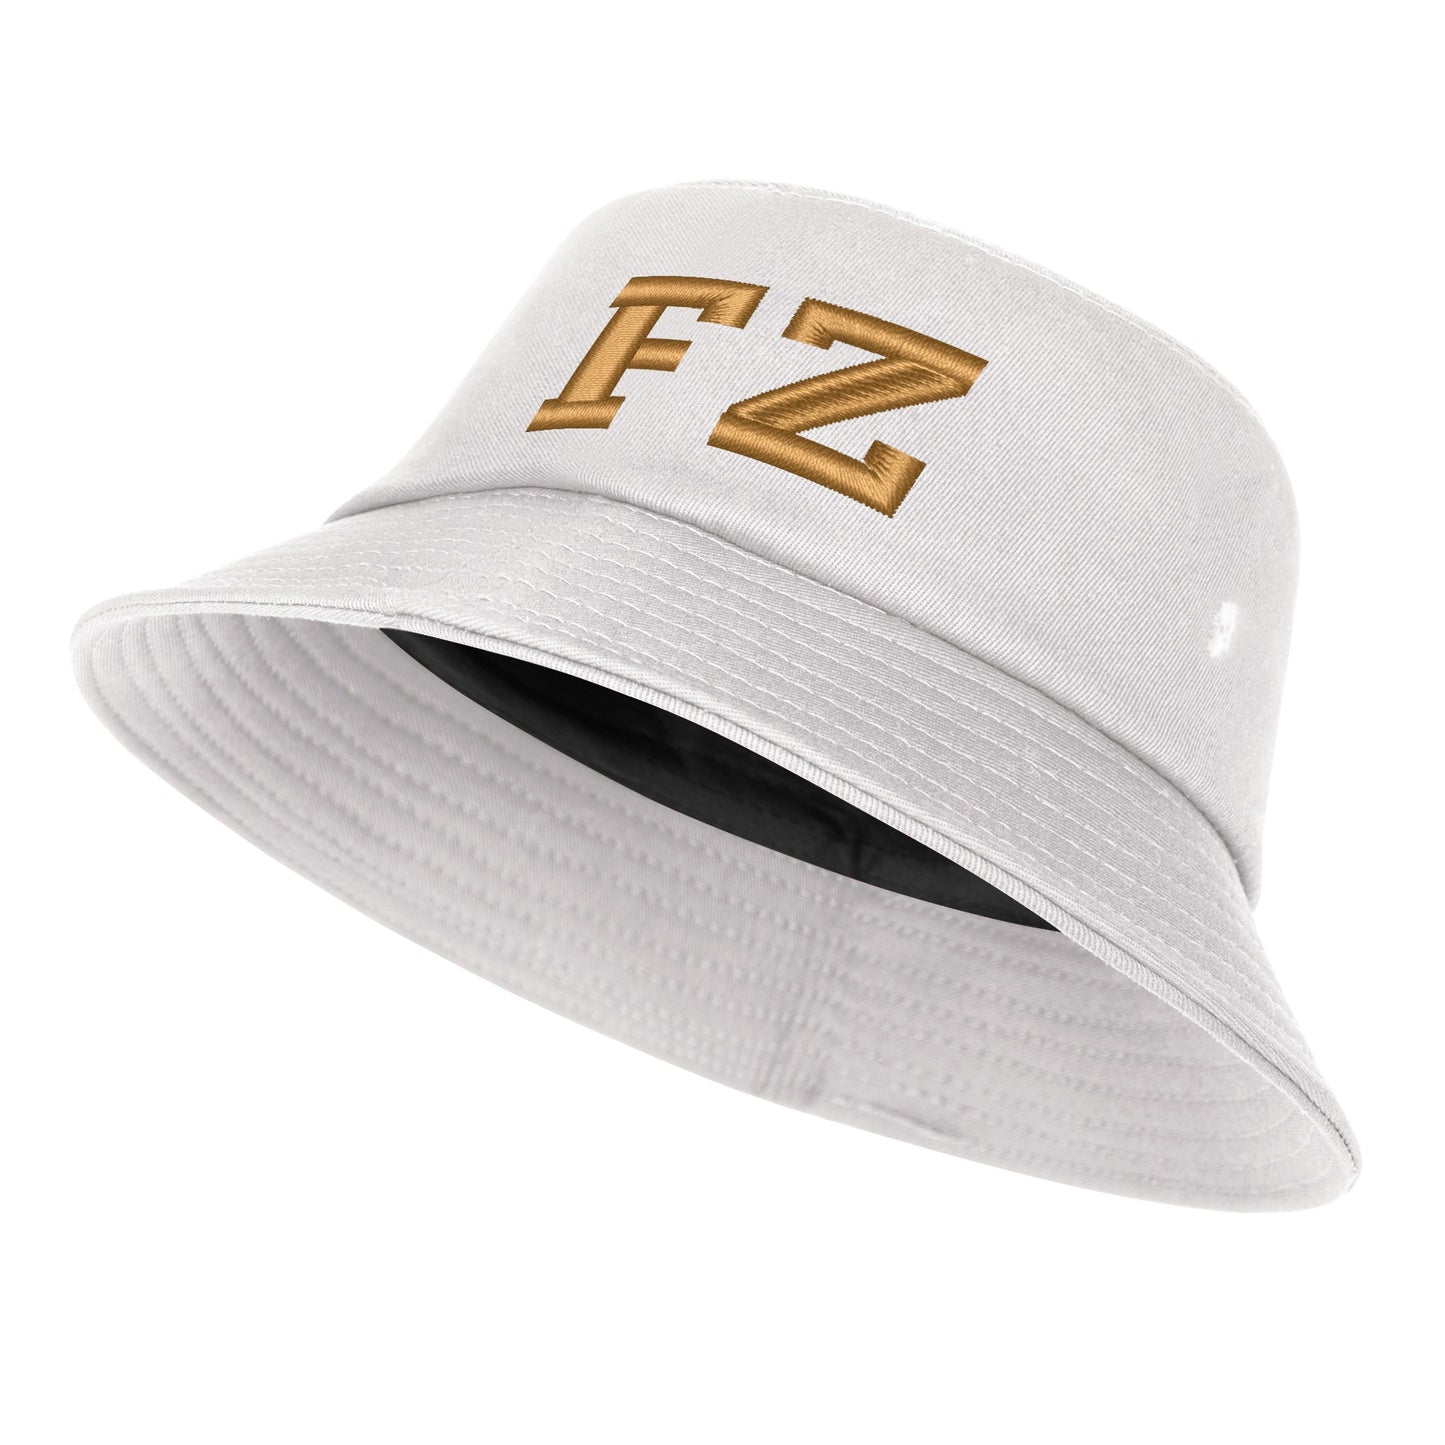 FZ Unisex Embroidered Bucket Hats - FZwear